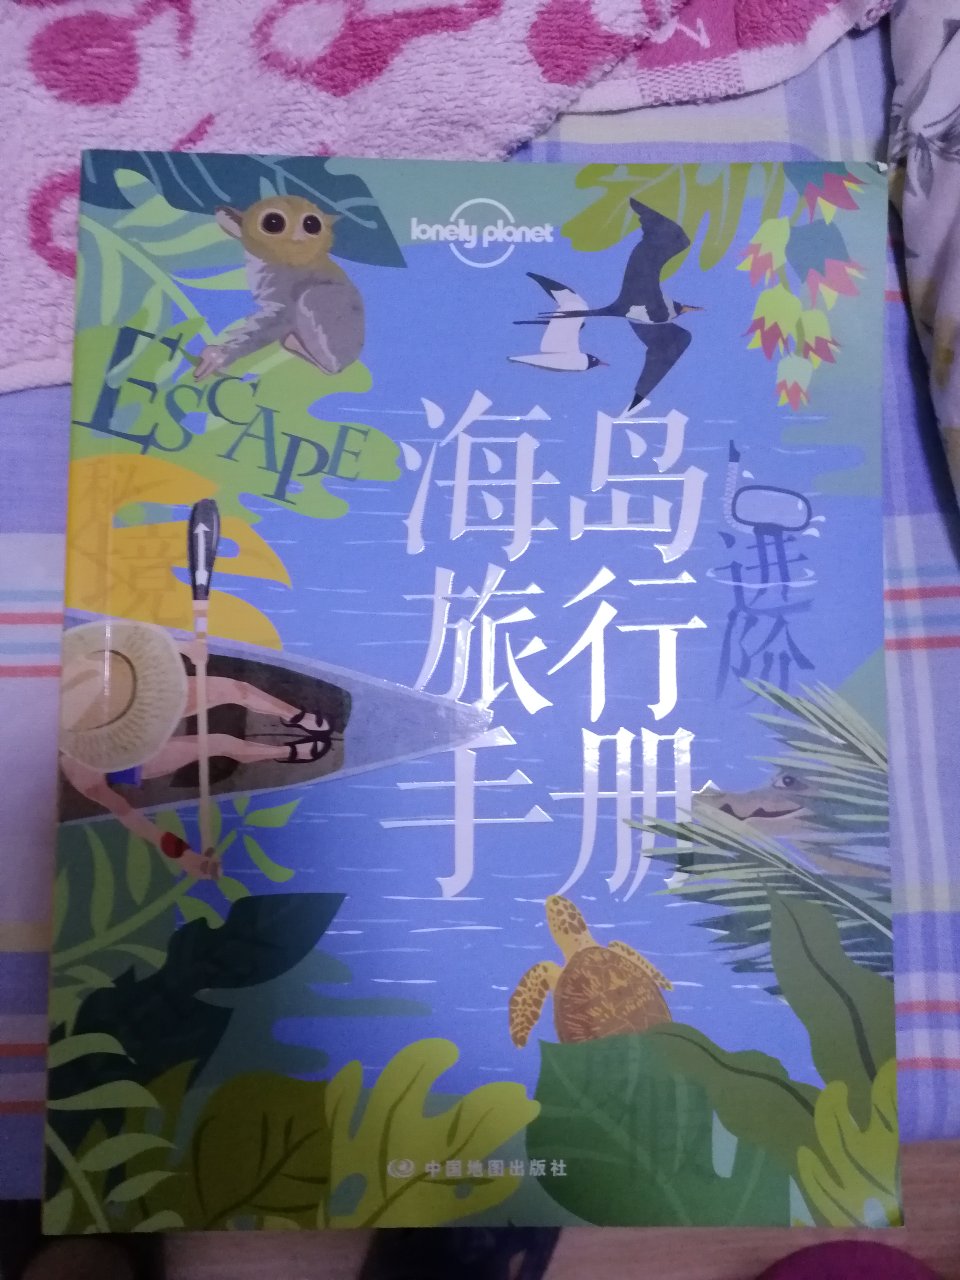 书很好，包装轻便。封面设计的很漂亮，装帧也很好。如果能有分别详细介绍冲绳群岛各个岛屿和巴哈马群岛的书就更好了。